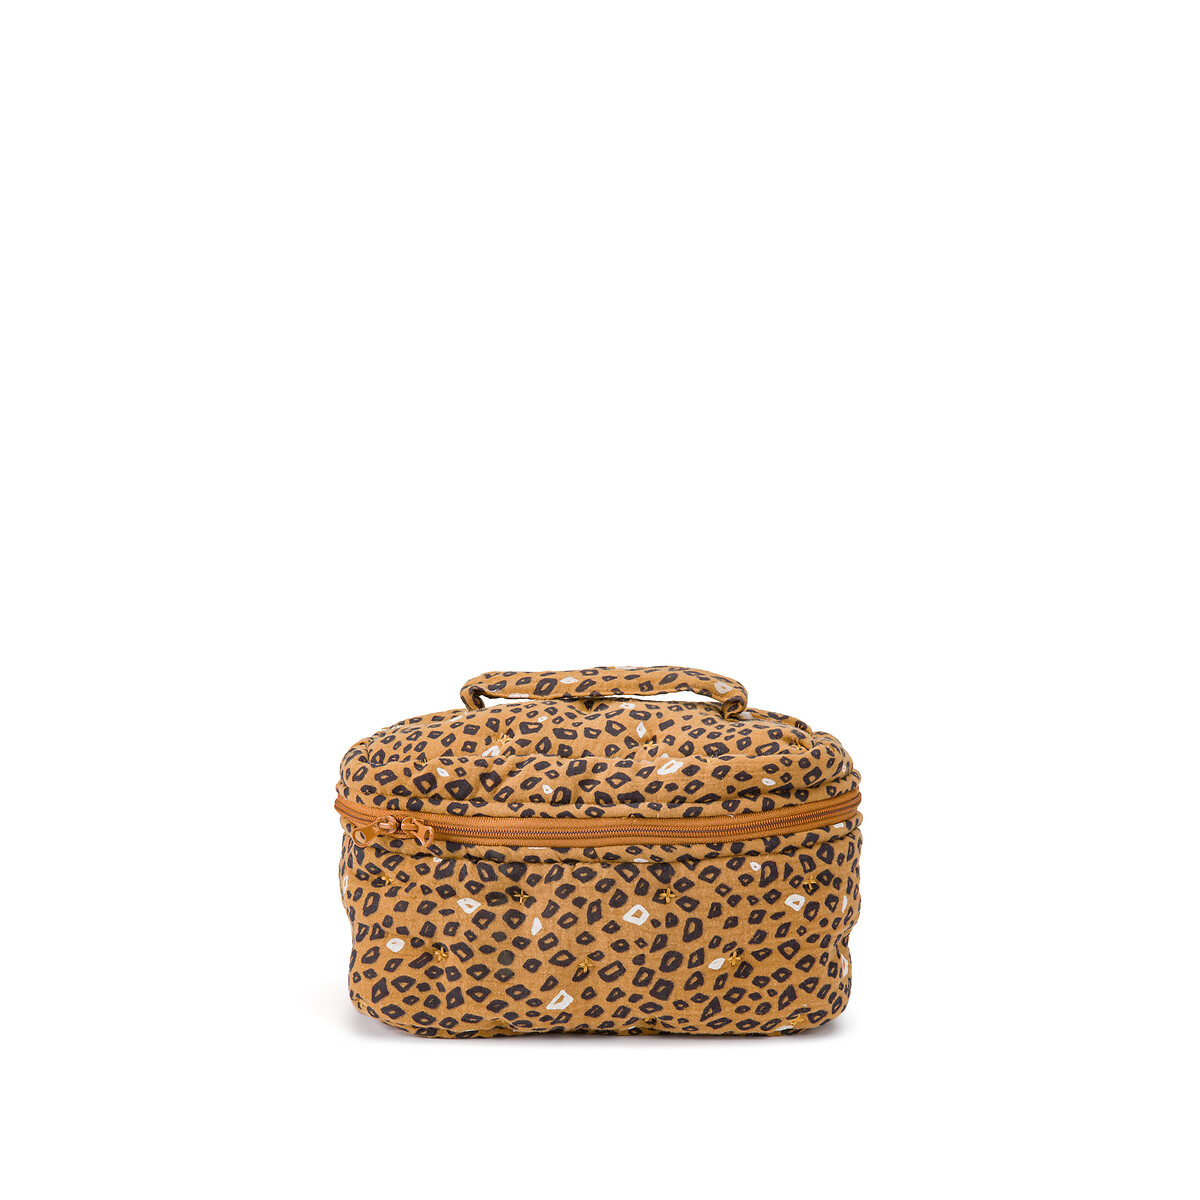 Несессер из хлопчатобумажной газовой ткани Wild lopard единый размер черный несессер из хлопчатобумажной газовой ткани wild lopard единый размер черный